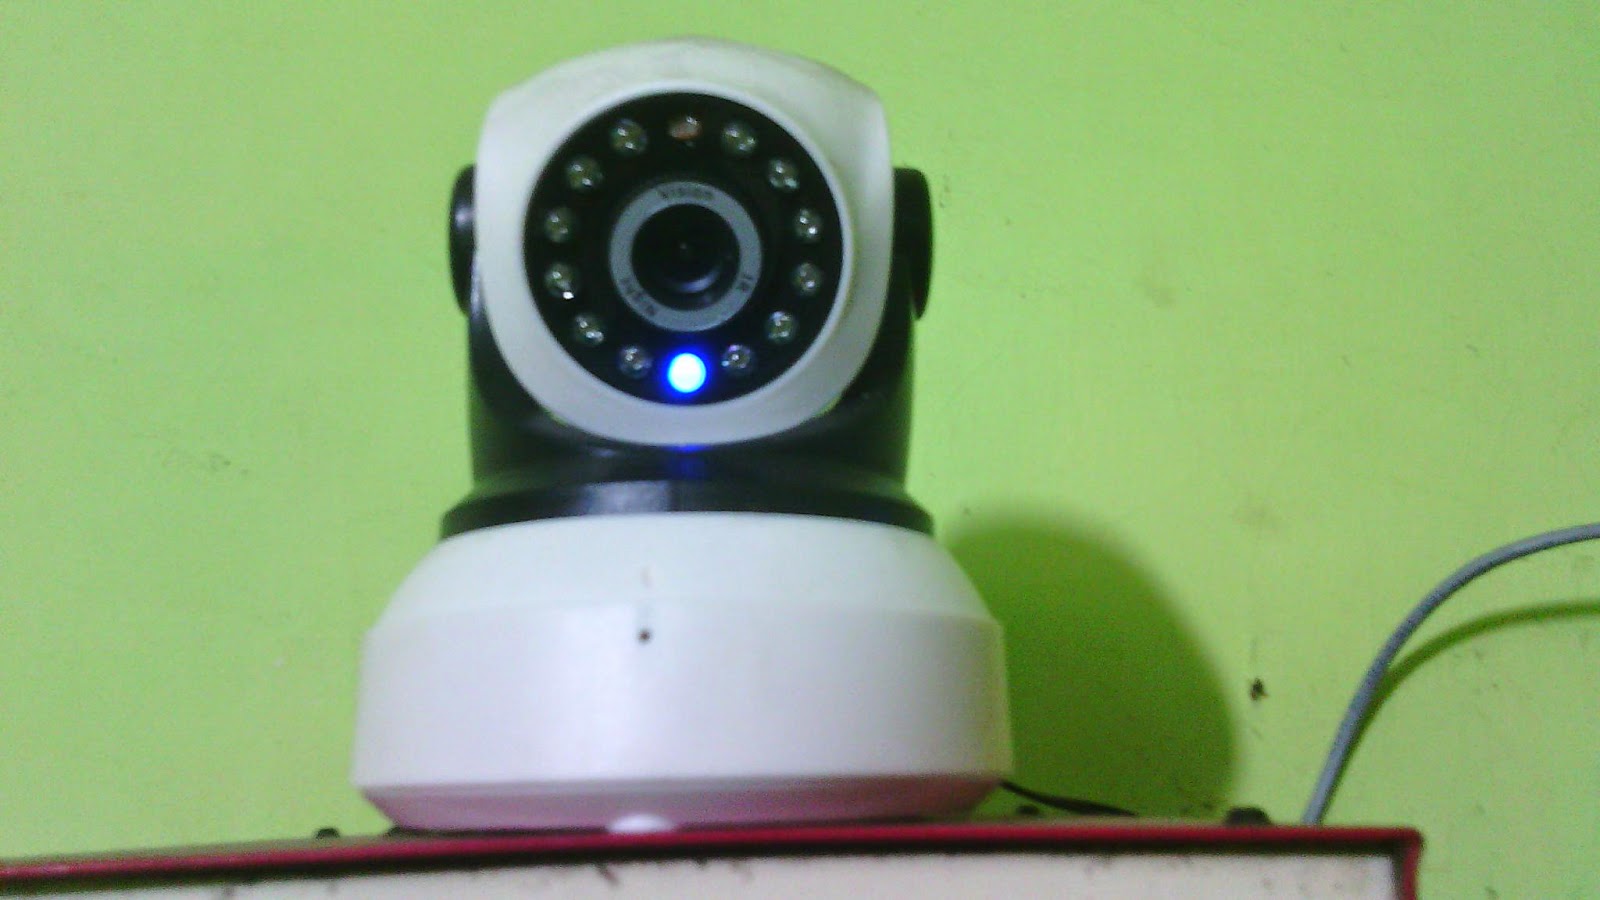 Teknisi CCTV Jogja Solusi Keamanan Anda